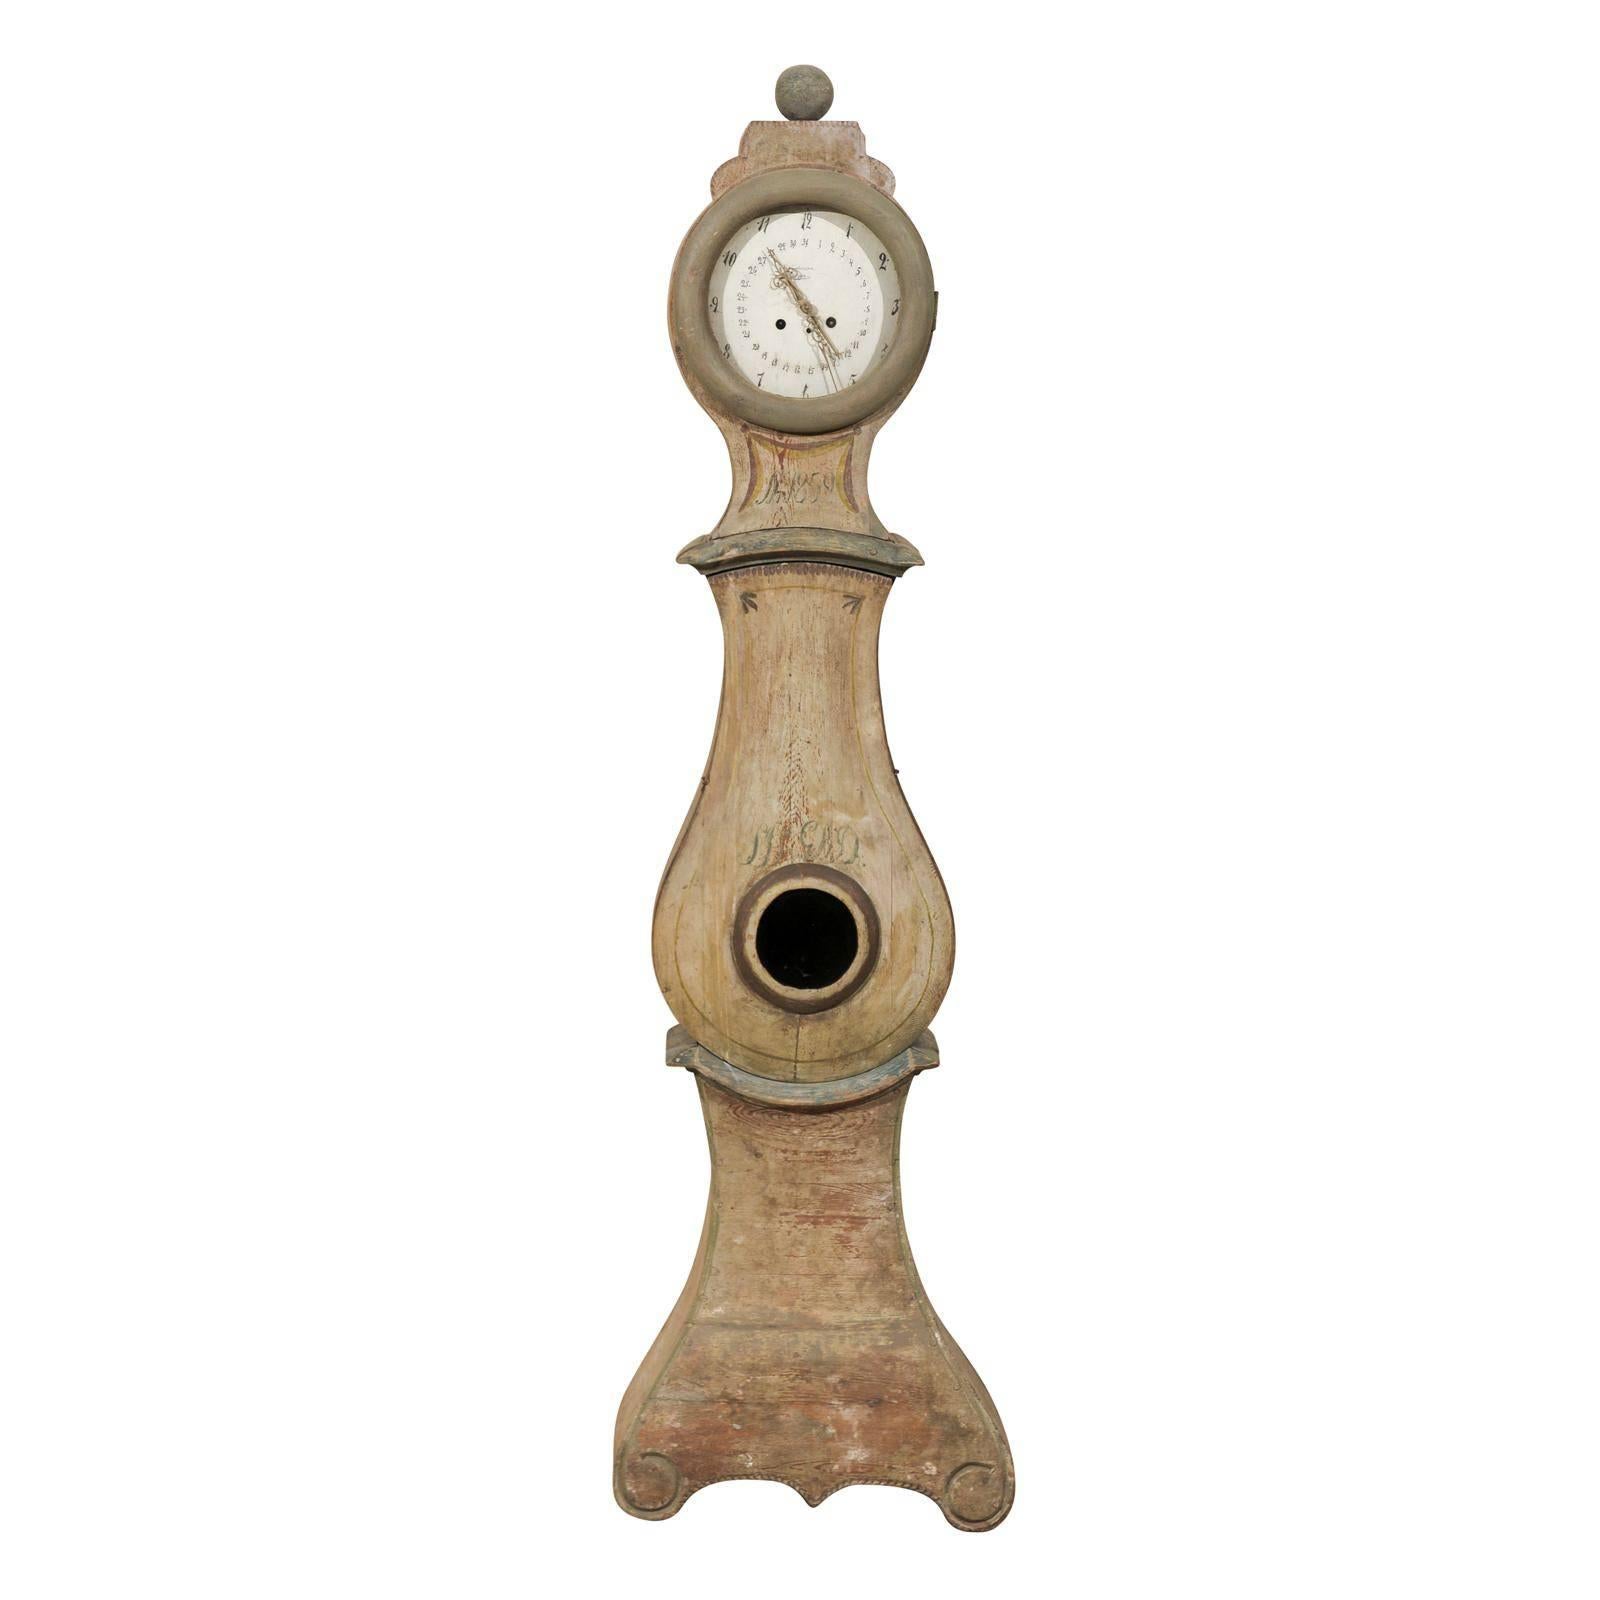 Magnifique horloge suédoise du 19ème siècle avec crête et volutes sculptées sur la base